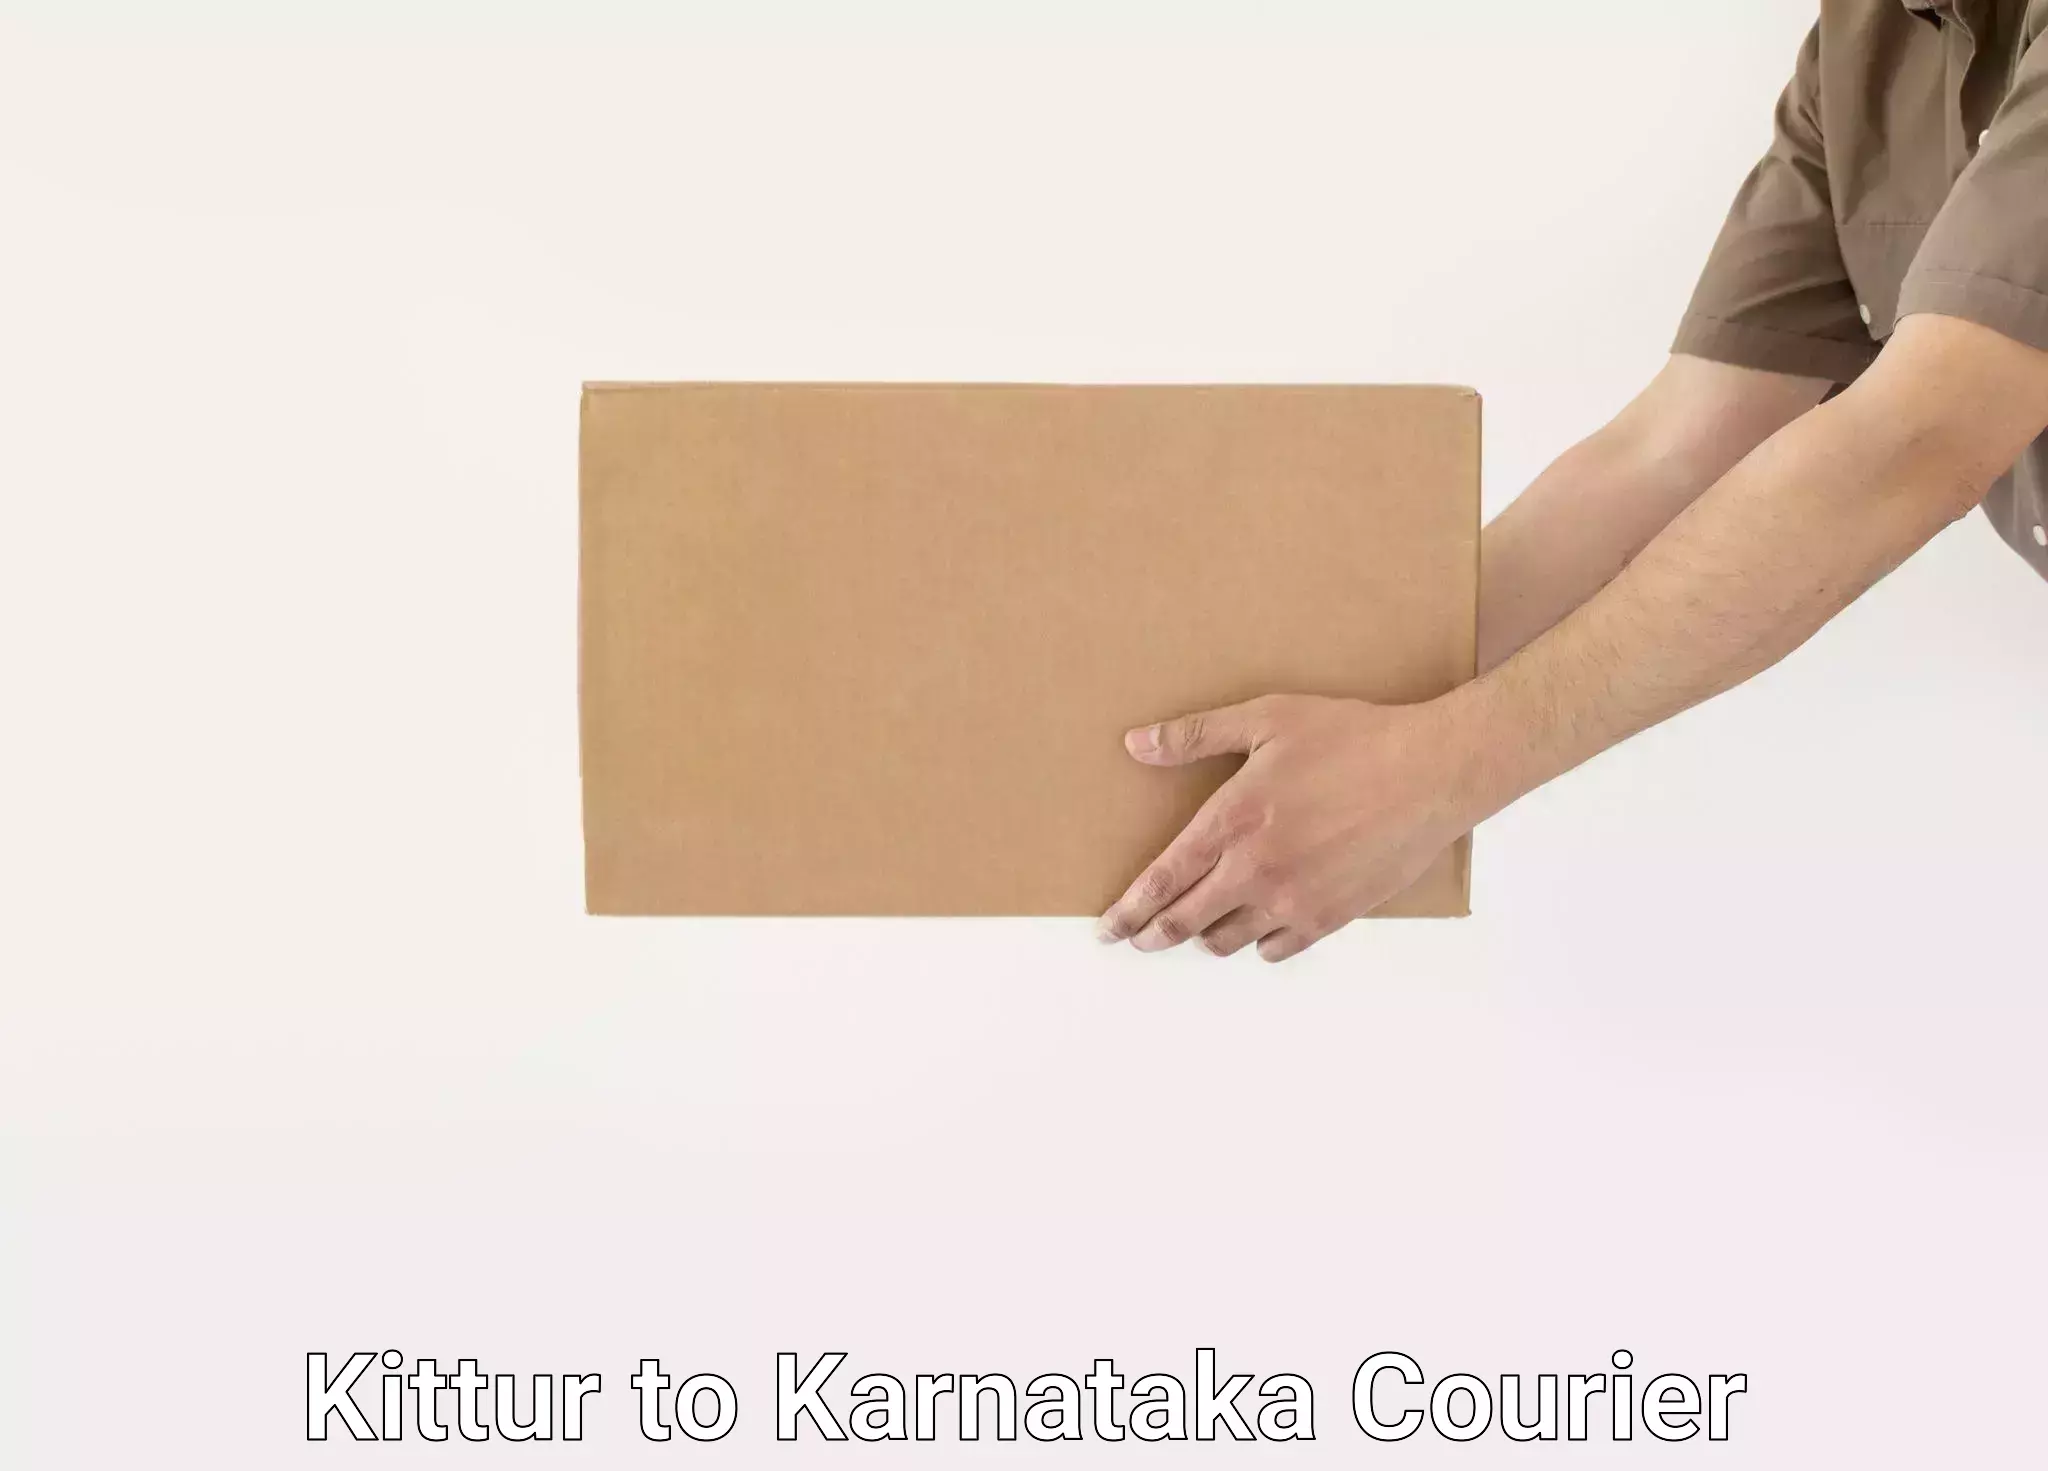 Skilled furniture movers in Kittur to Kanjarakatte